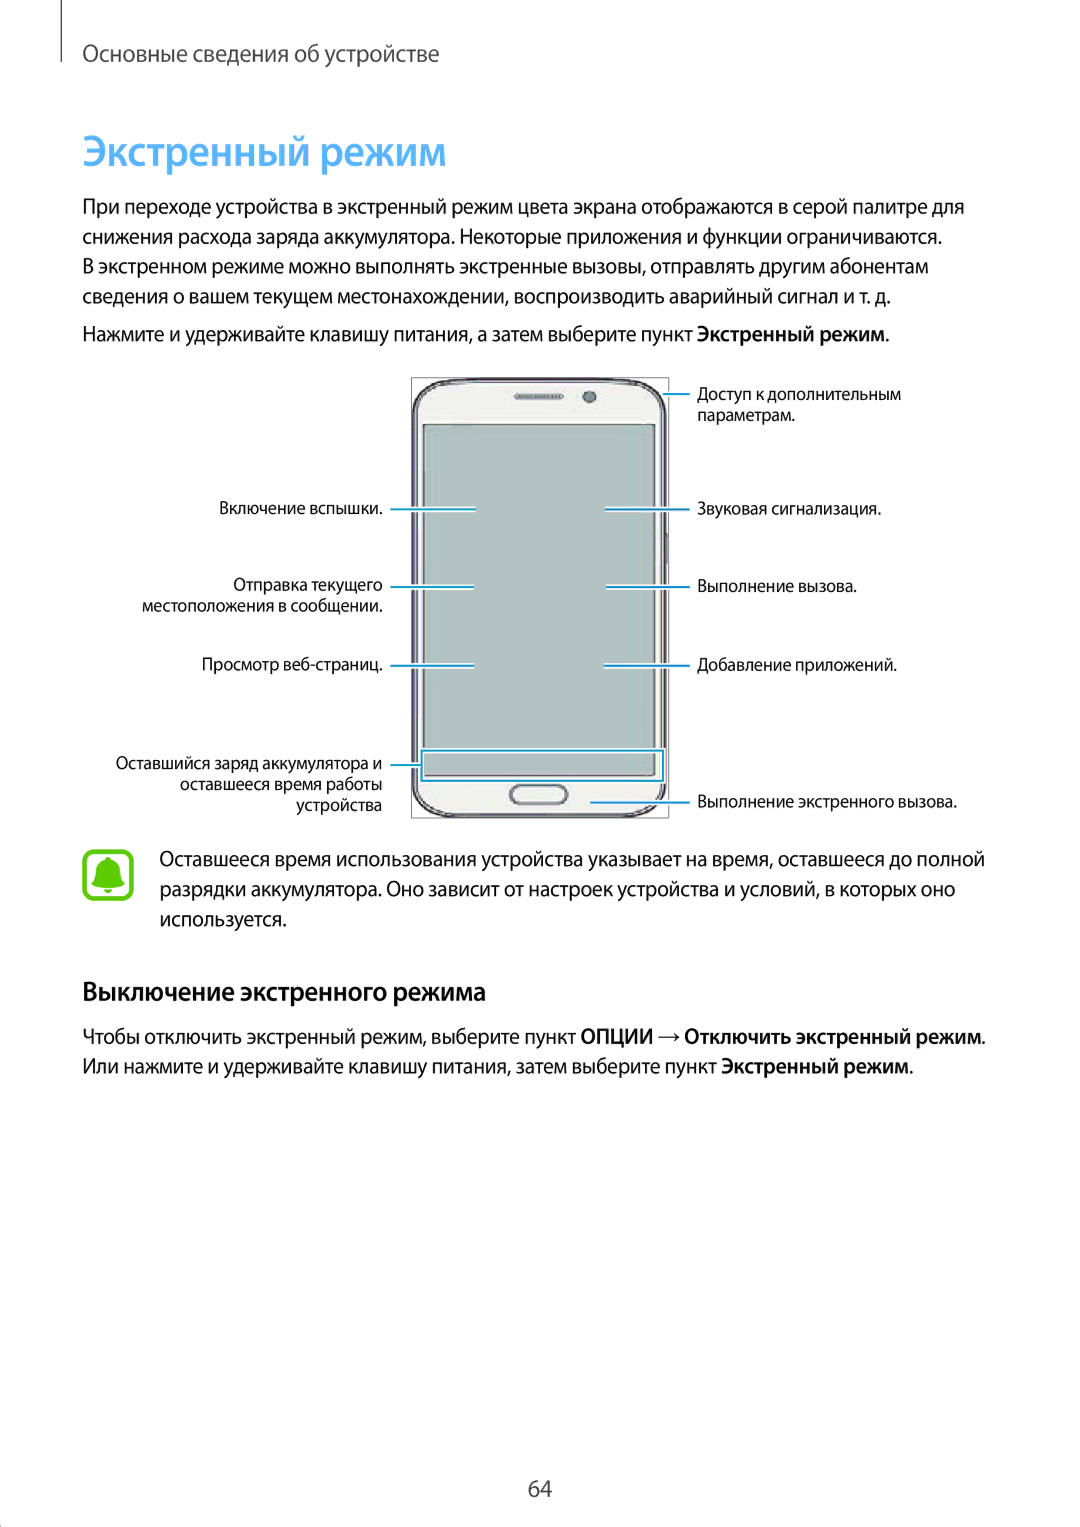 Samsung SM-N920CZDESER, SM-N920CZKESER, SM-N920CEDESER manual Экстренный режим, Выключение экстренного режима 